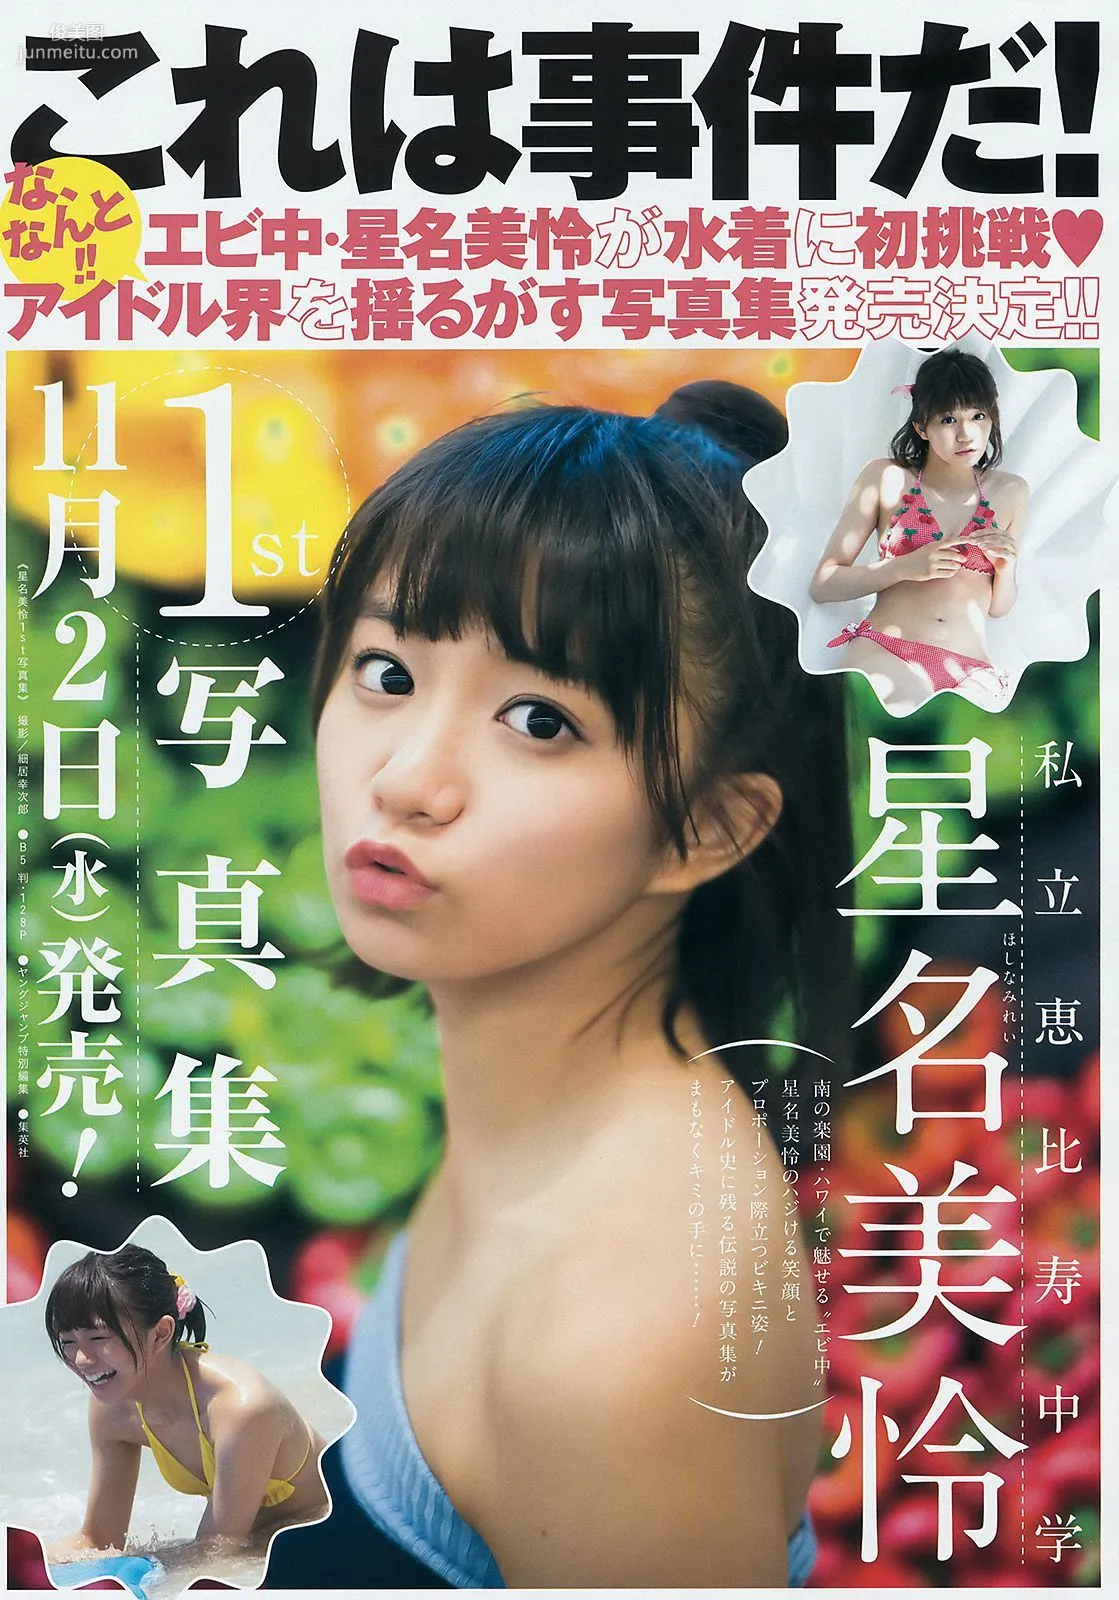 金子理江 堀みづき 加藤里保菜 [Weekly Young Jump] 2016年No.42 写真杂志9